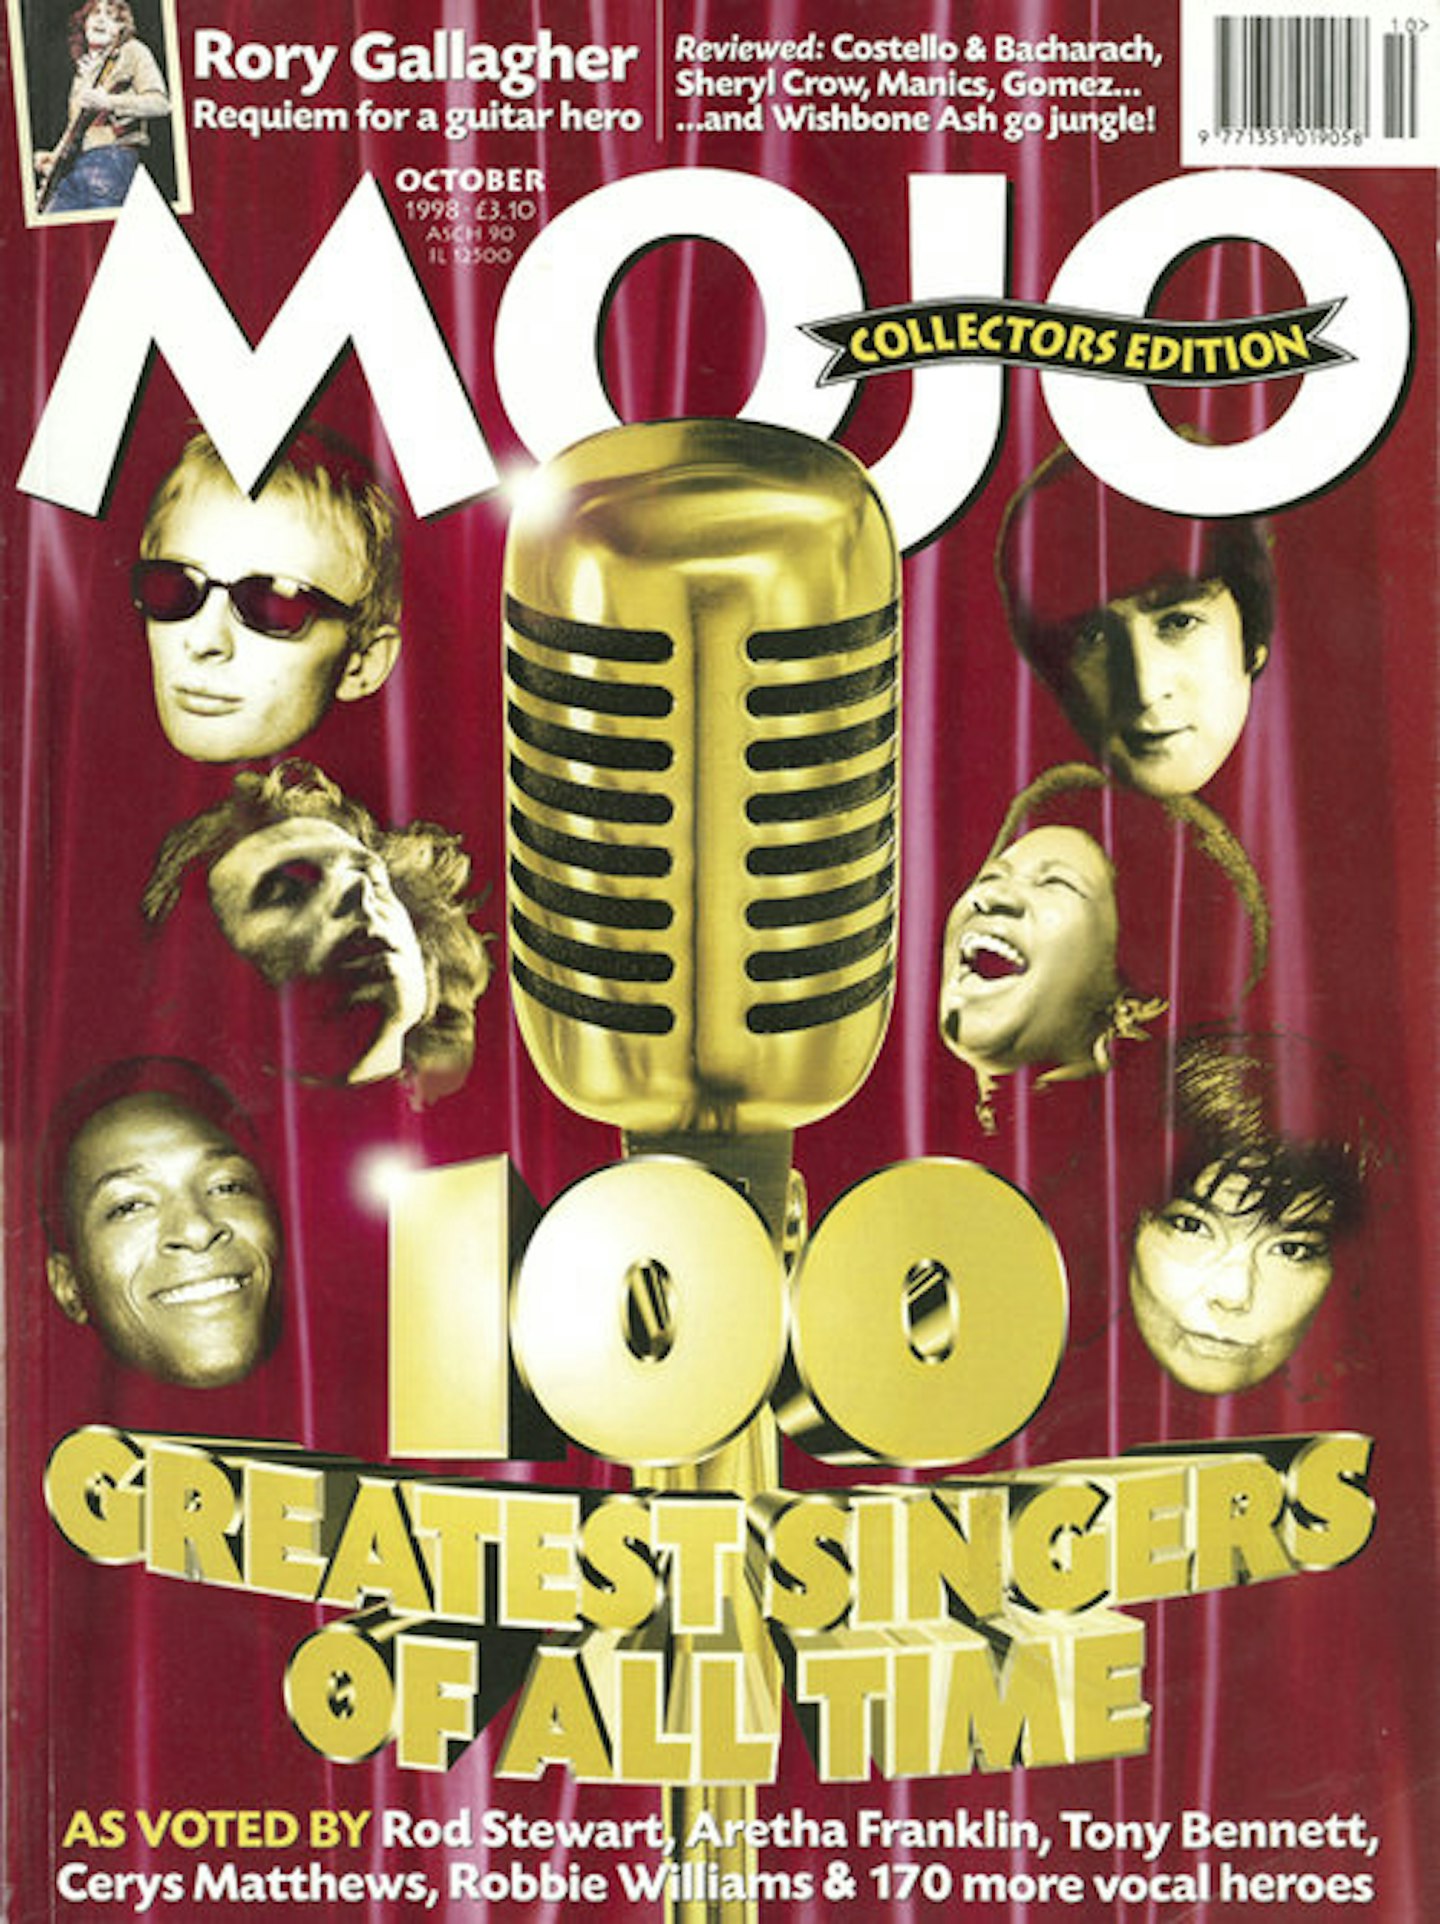 MOJO Issue 59 / October 1998